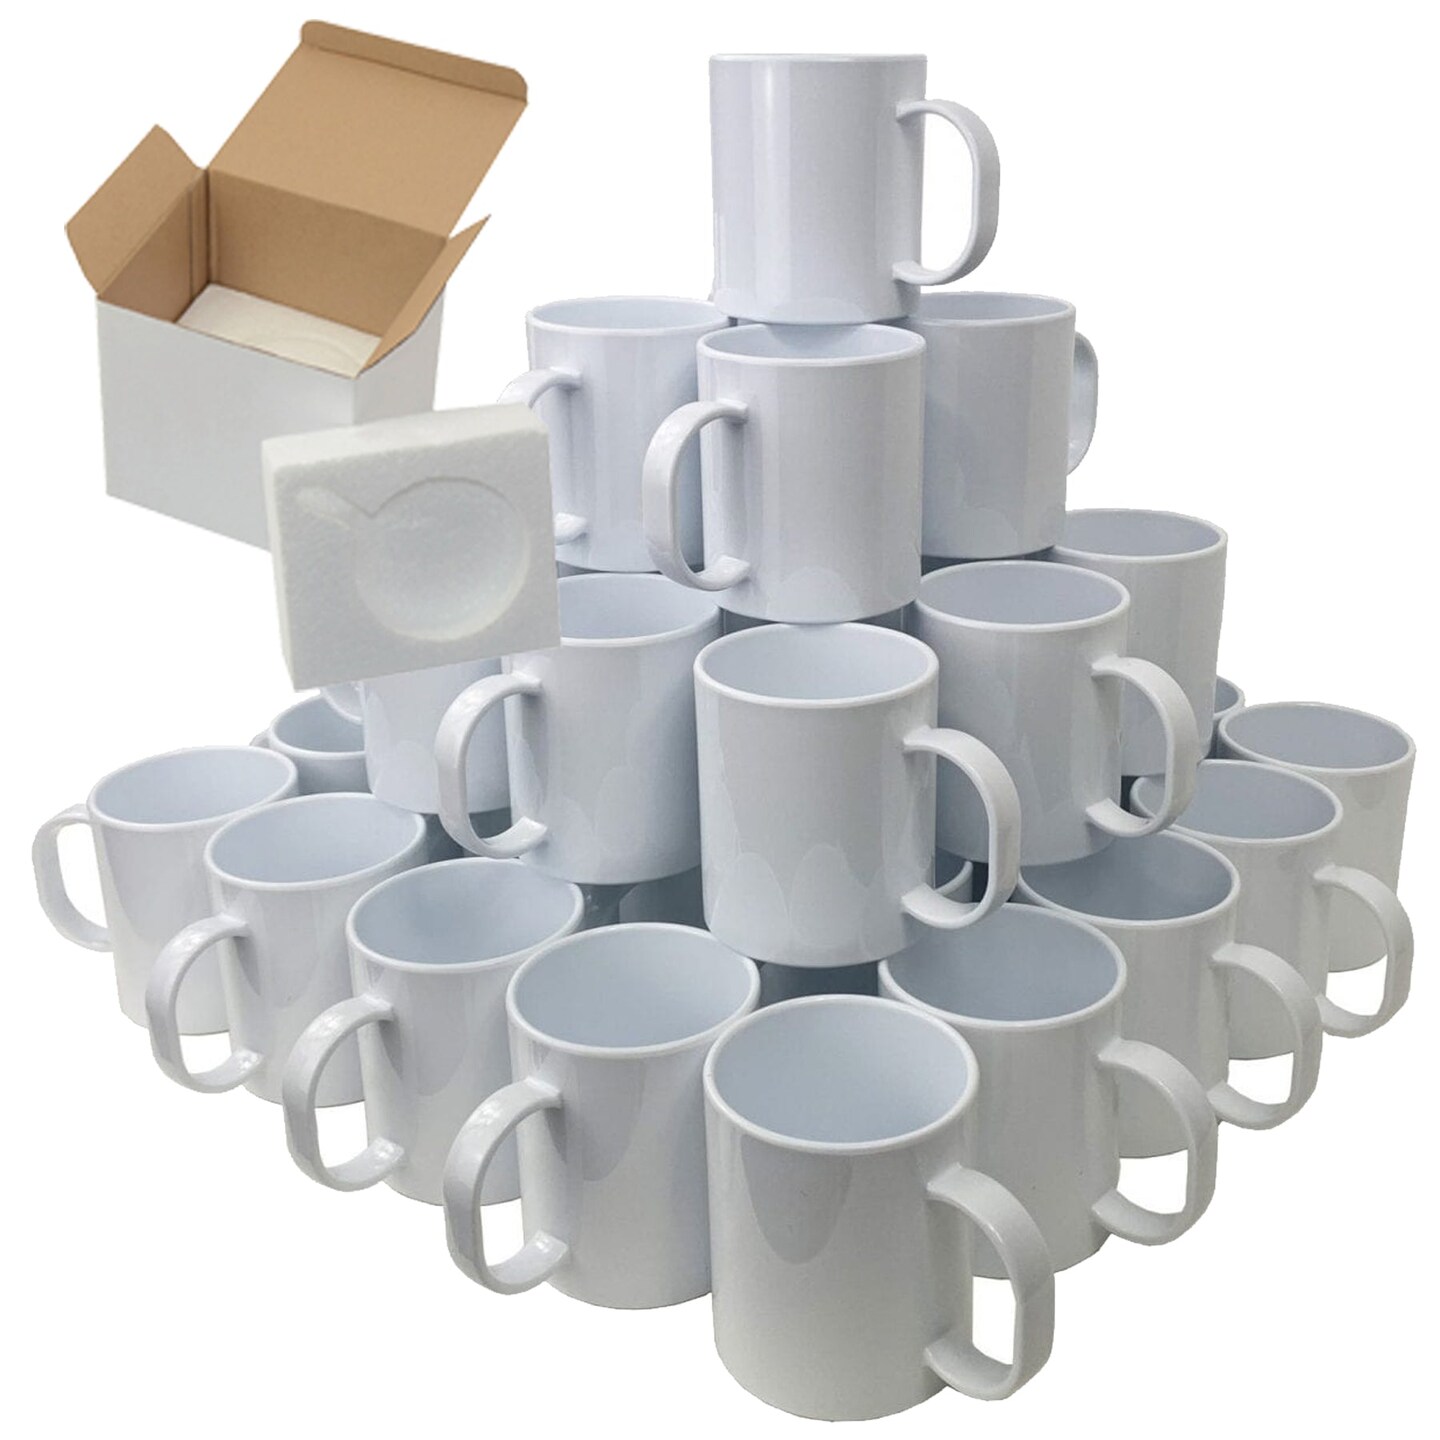 15oz Sublimation Mugs With Gift Mug Box. Mugs Cardboard Box -  Denmark